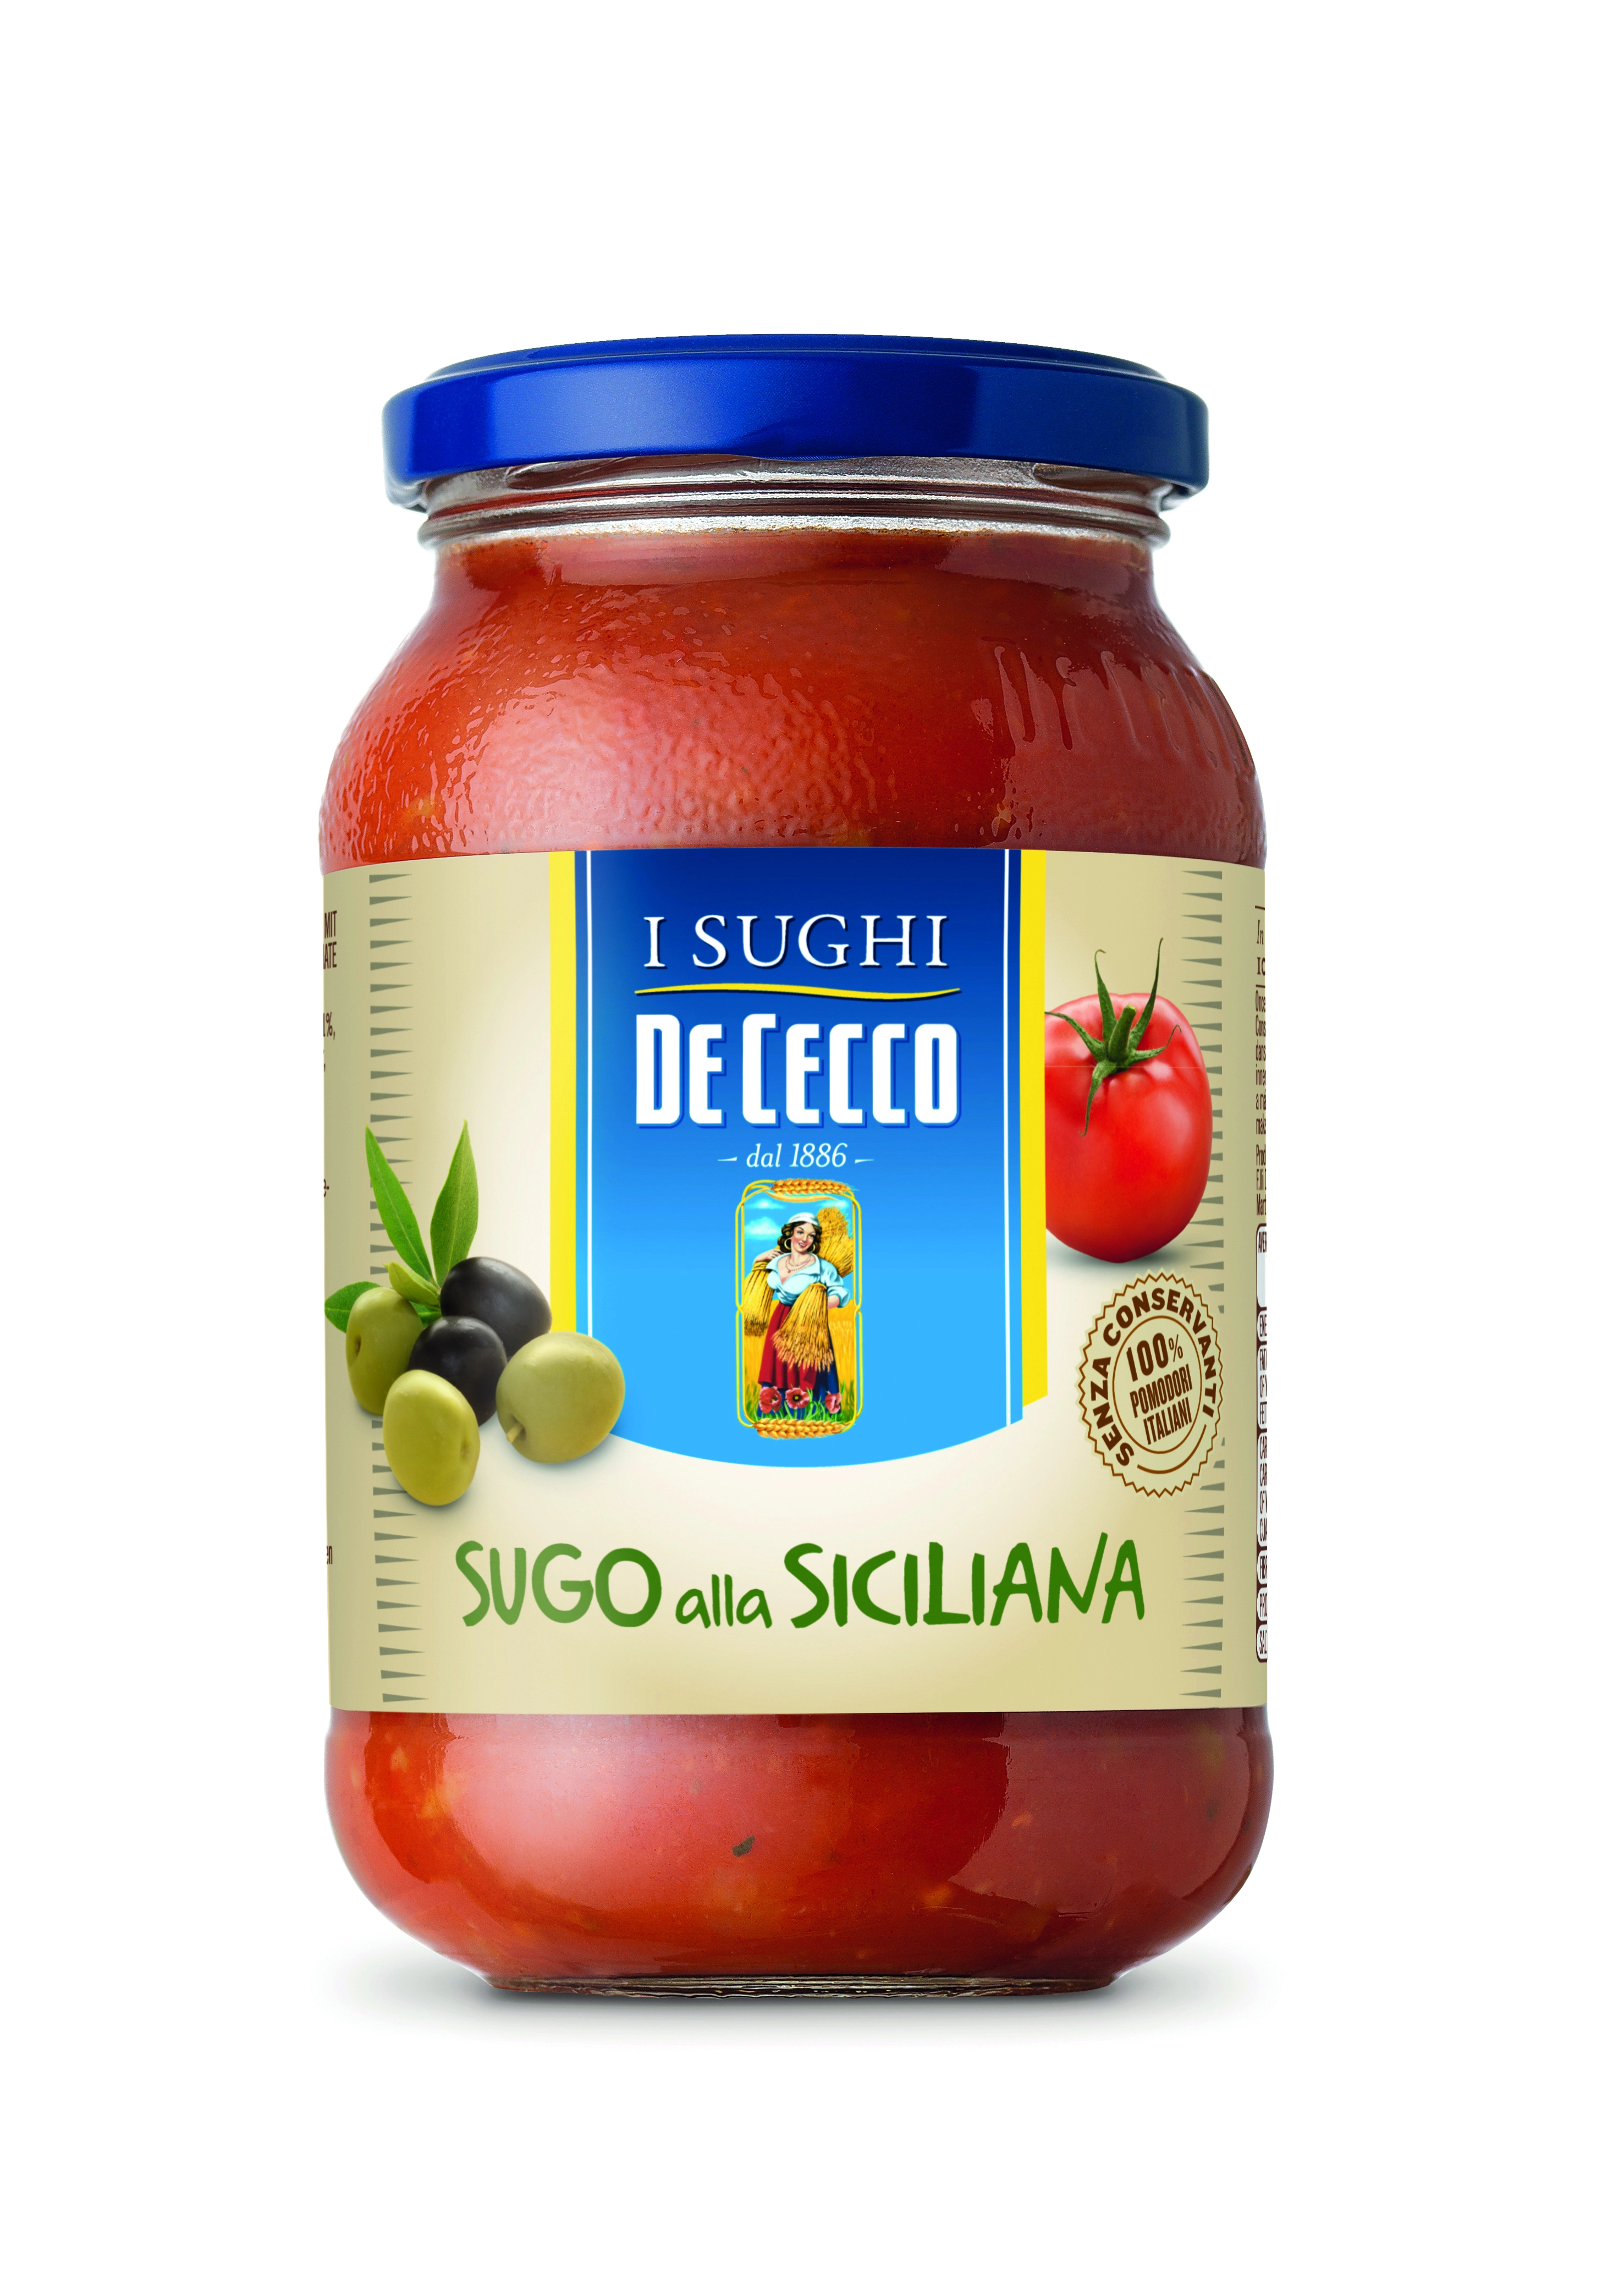 De Cecco Tomato sauce Alla Siciliana 400g